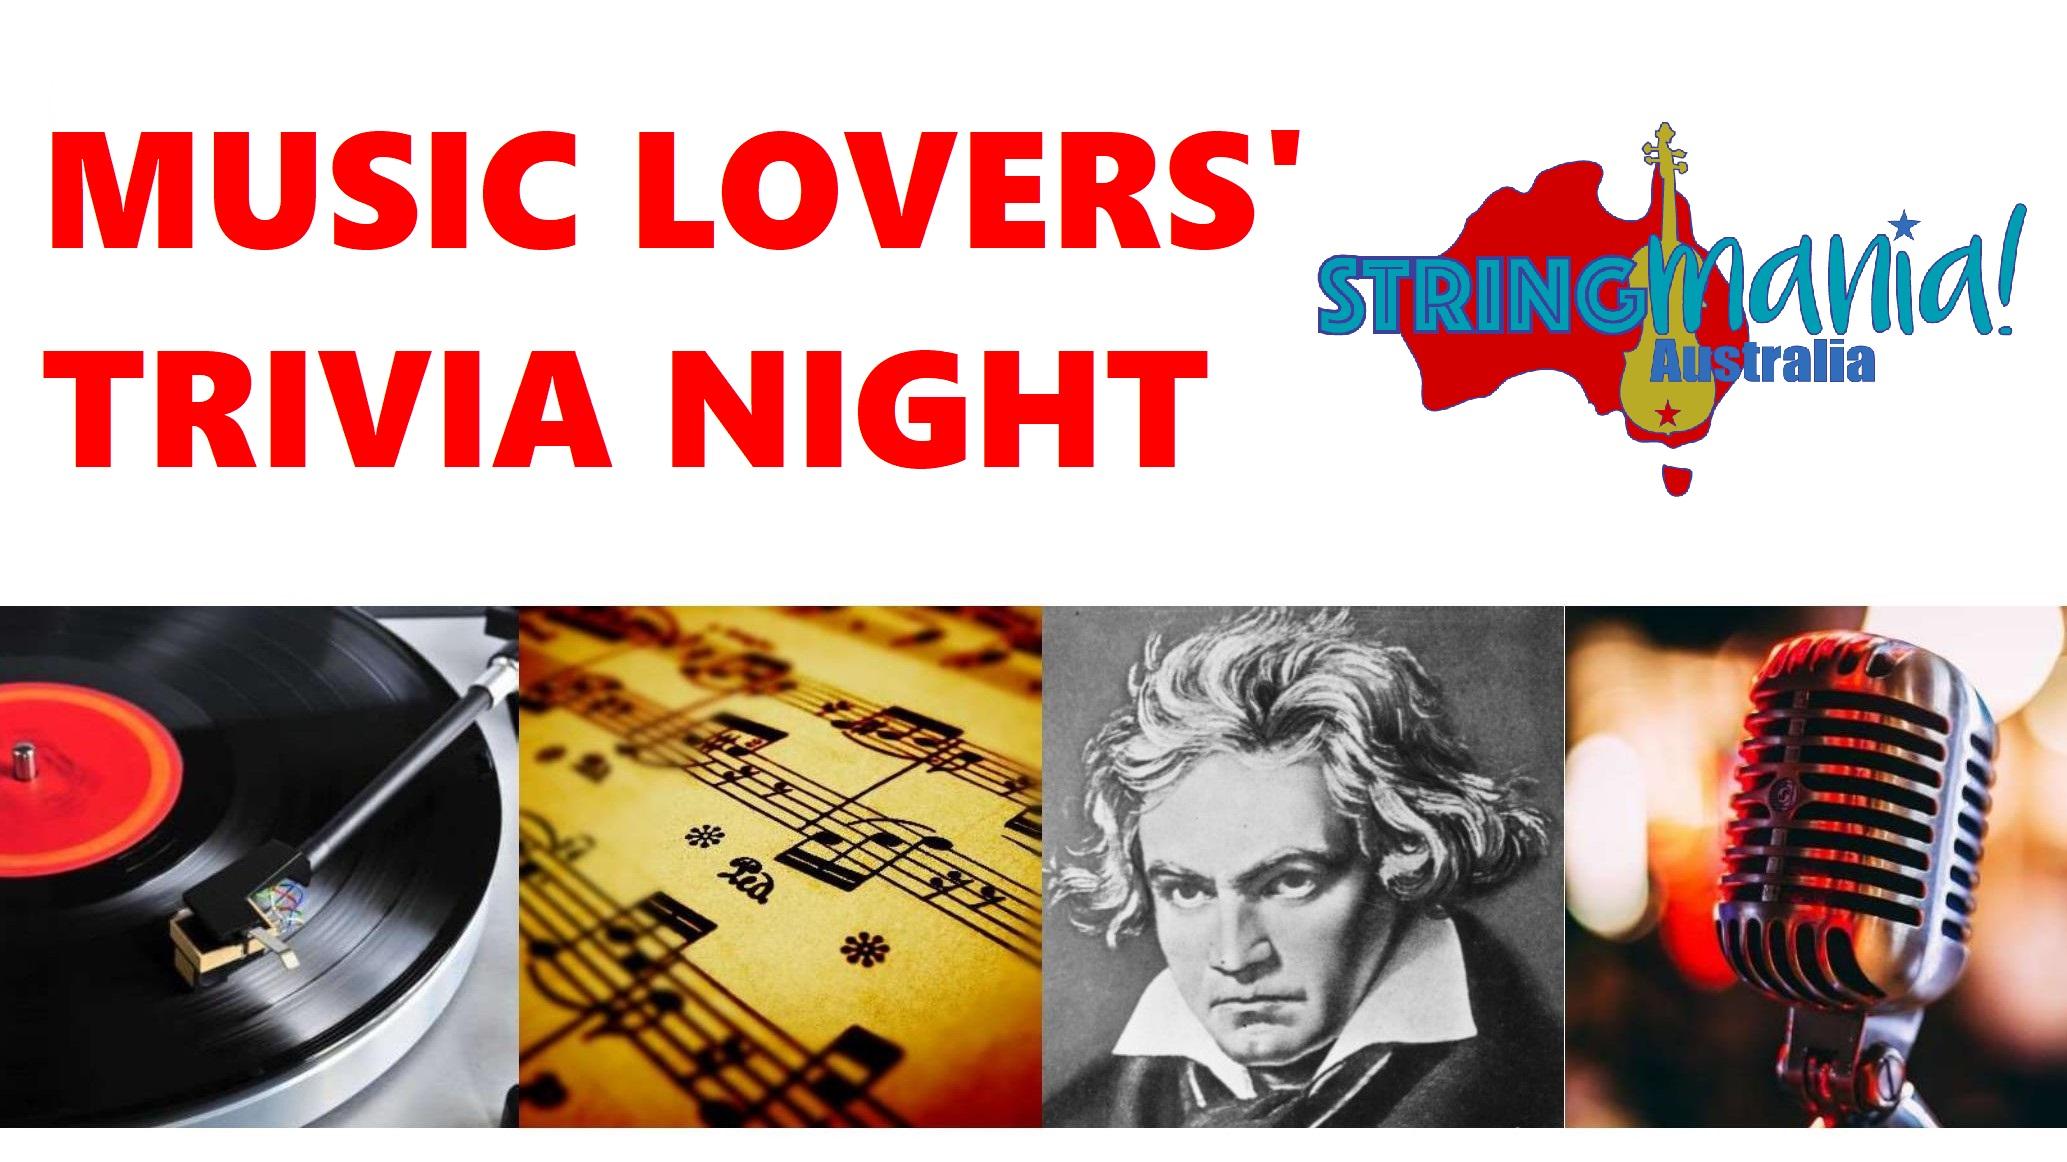 Stringmania Music Lovers' Trivia Night - THIS SUNDAY! 